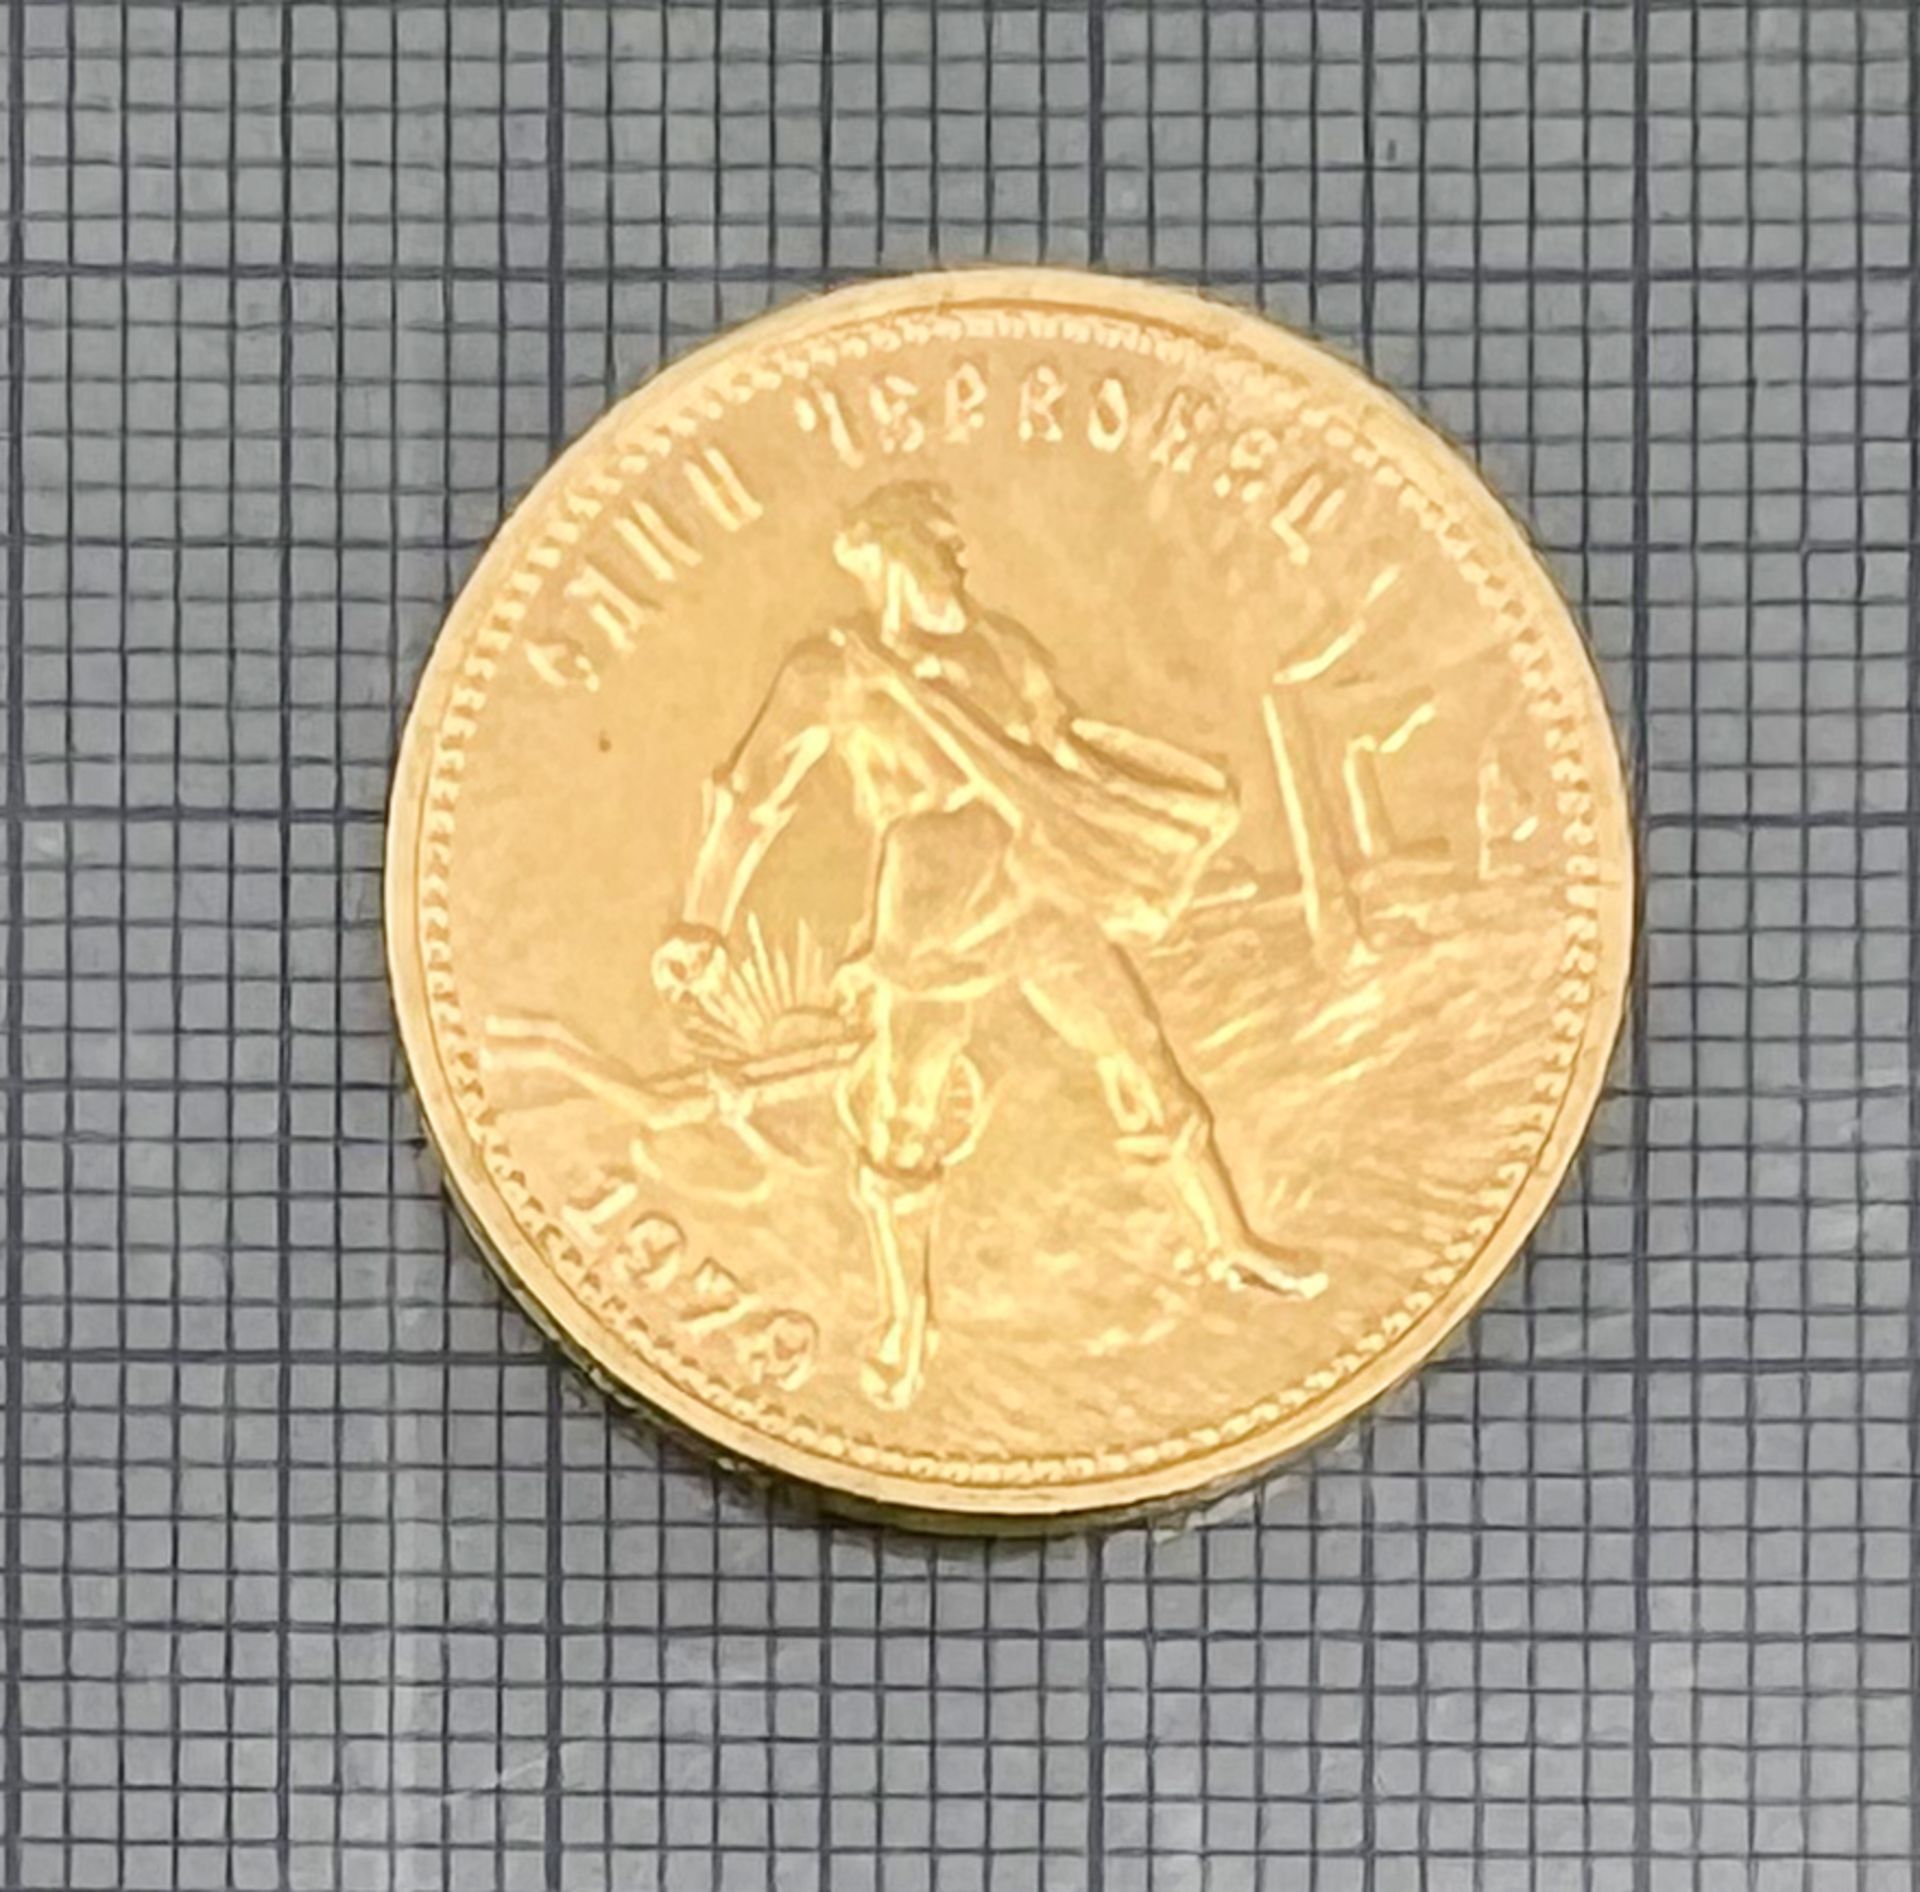 Goldmünze 1 Tscherwonetz. Sowjetunion 1979. 900 Gold. - Bild 3 aus 5